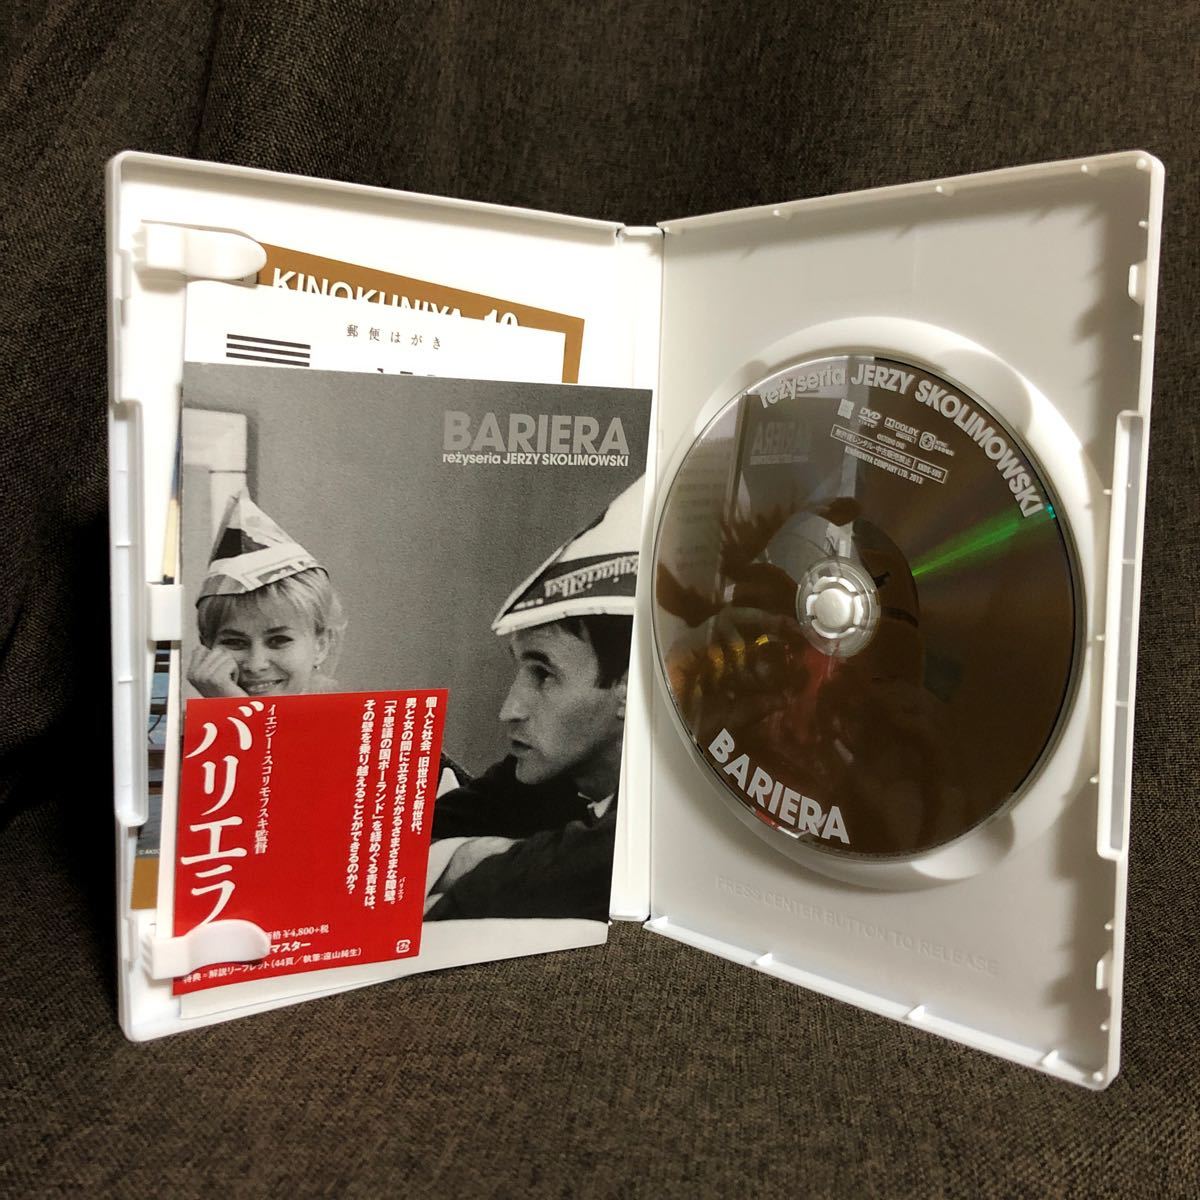 『バリエラ』イエジー・スコリモフスキ (DVD/紀伊國屋書店)【セル版】【送料無料】